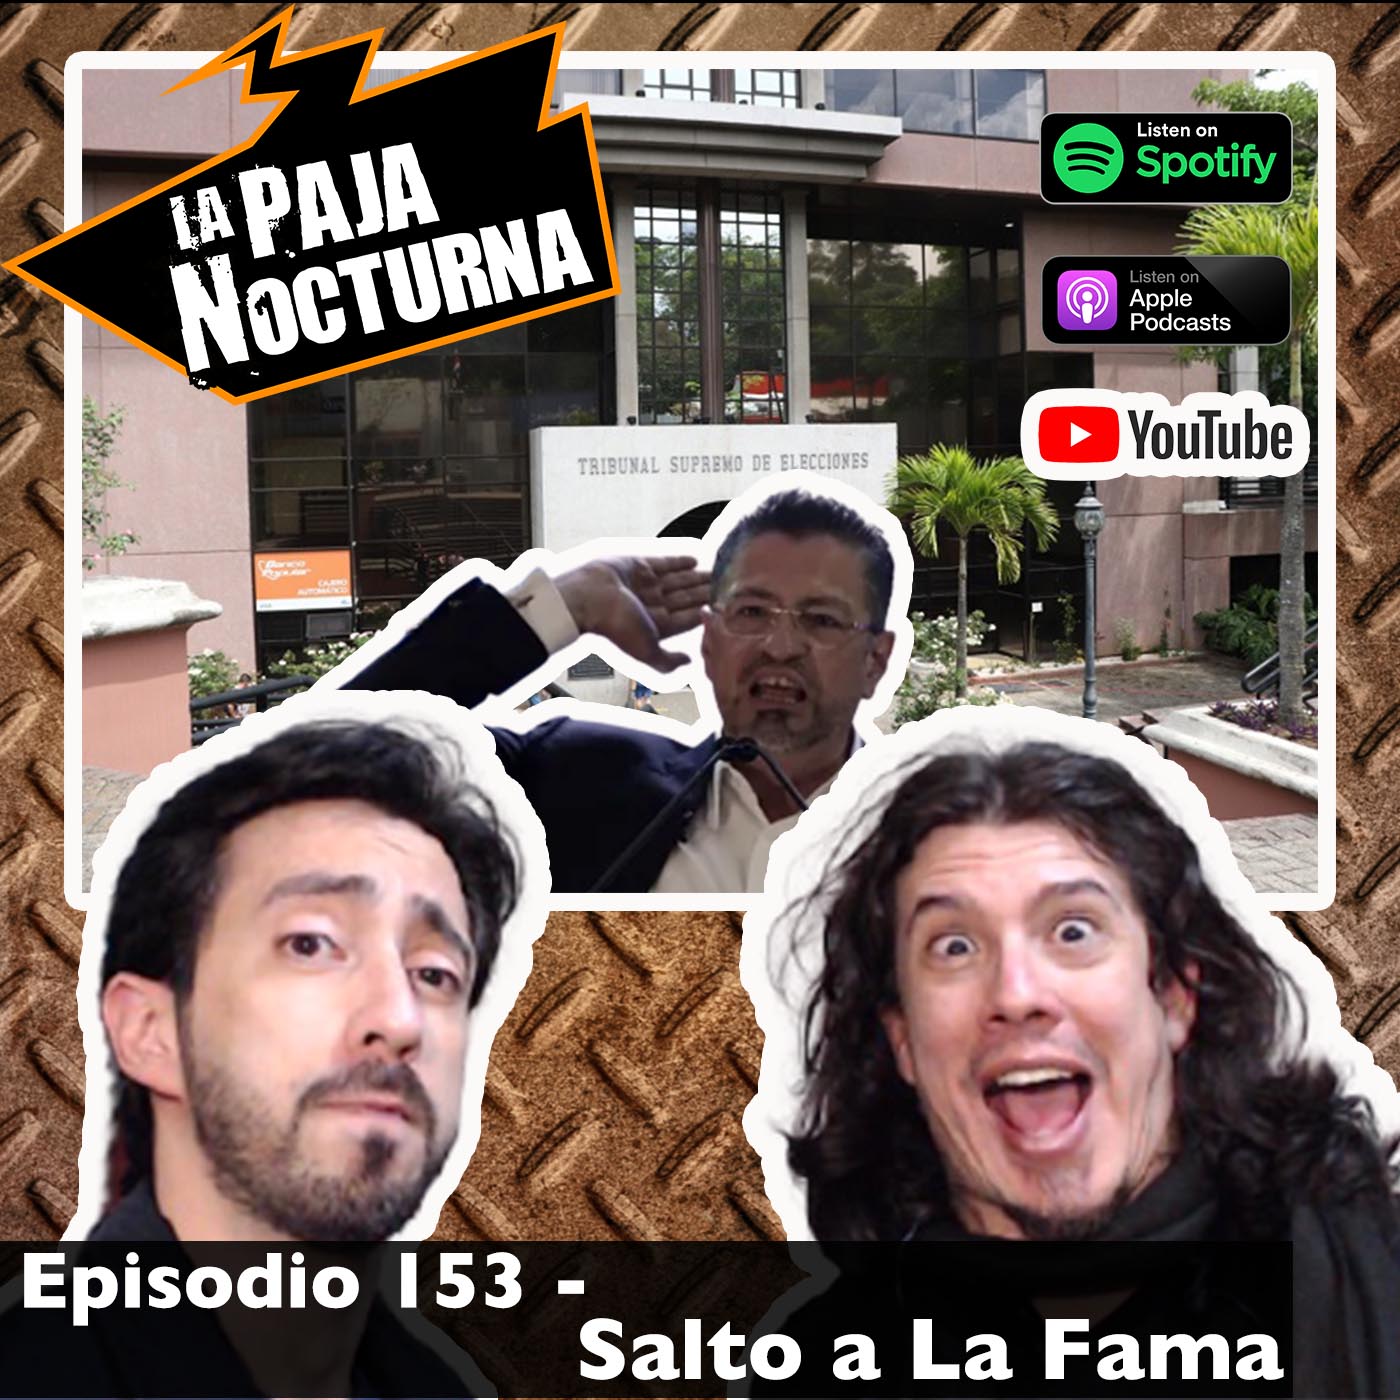 La paja nocturna podcast Episodio 153